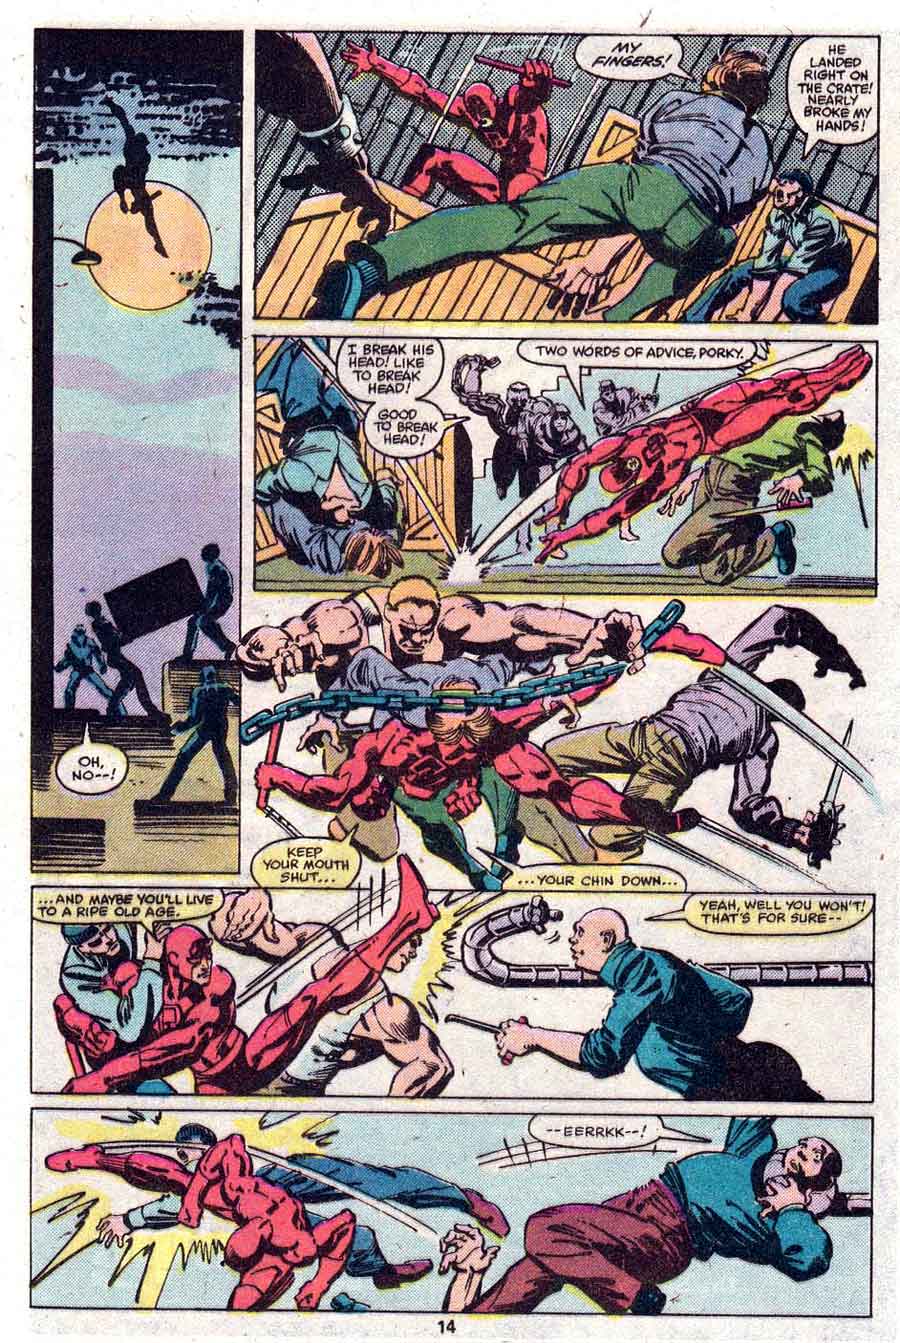 Daredevil v1 #165 marvel comic book page art by Frank Miller